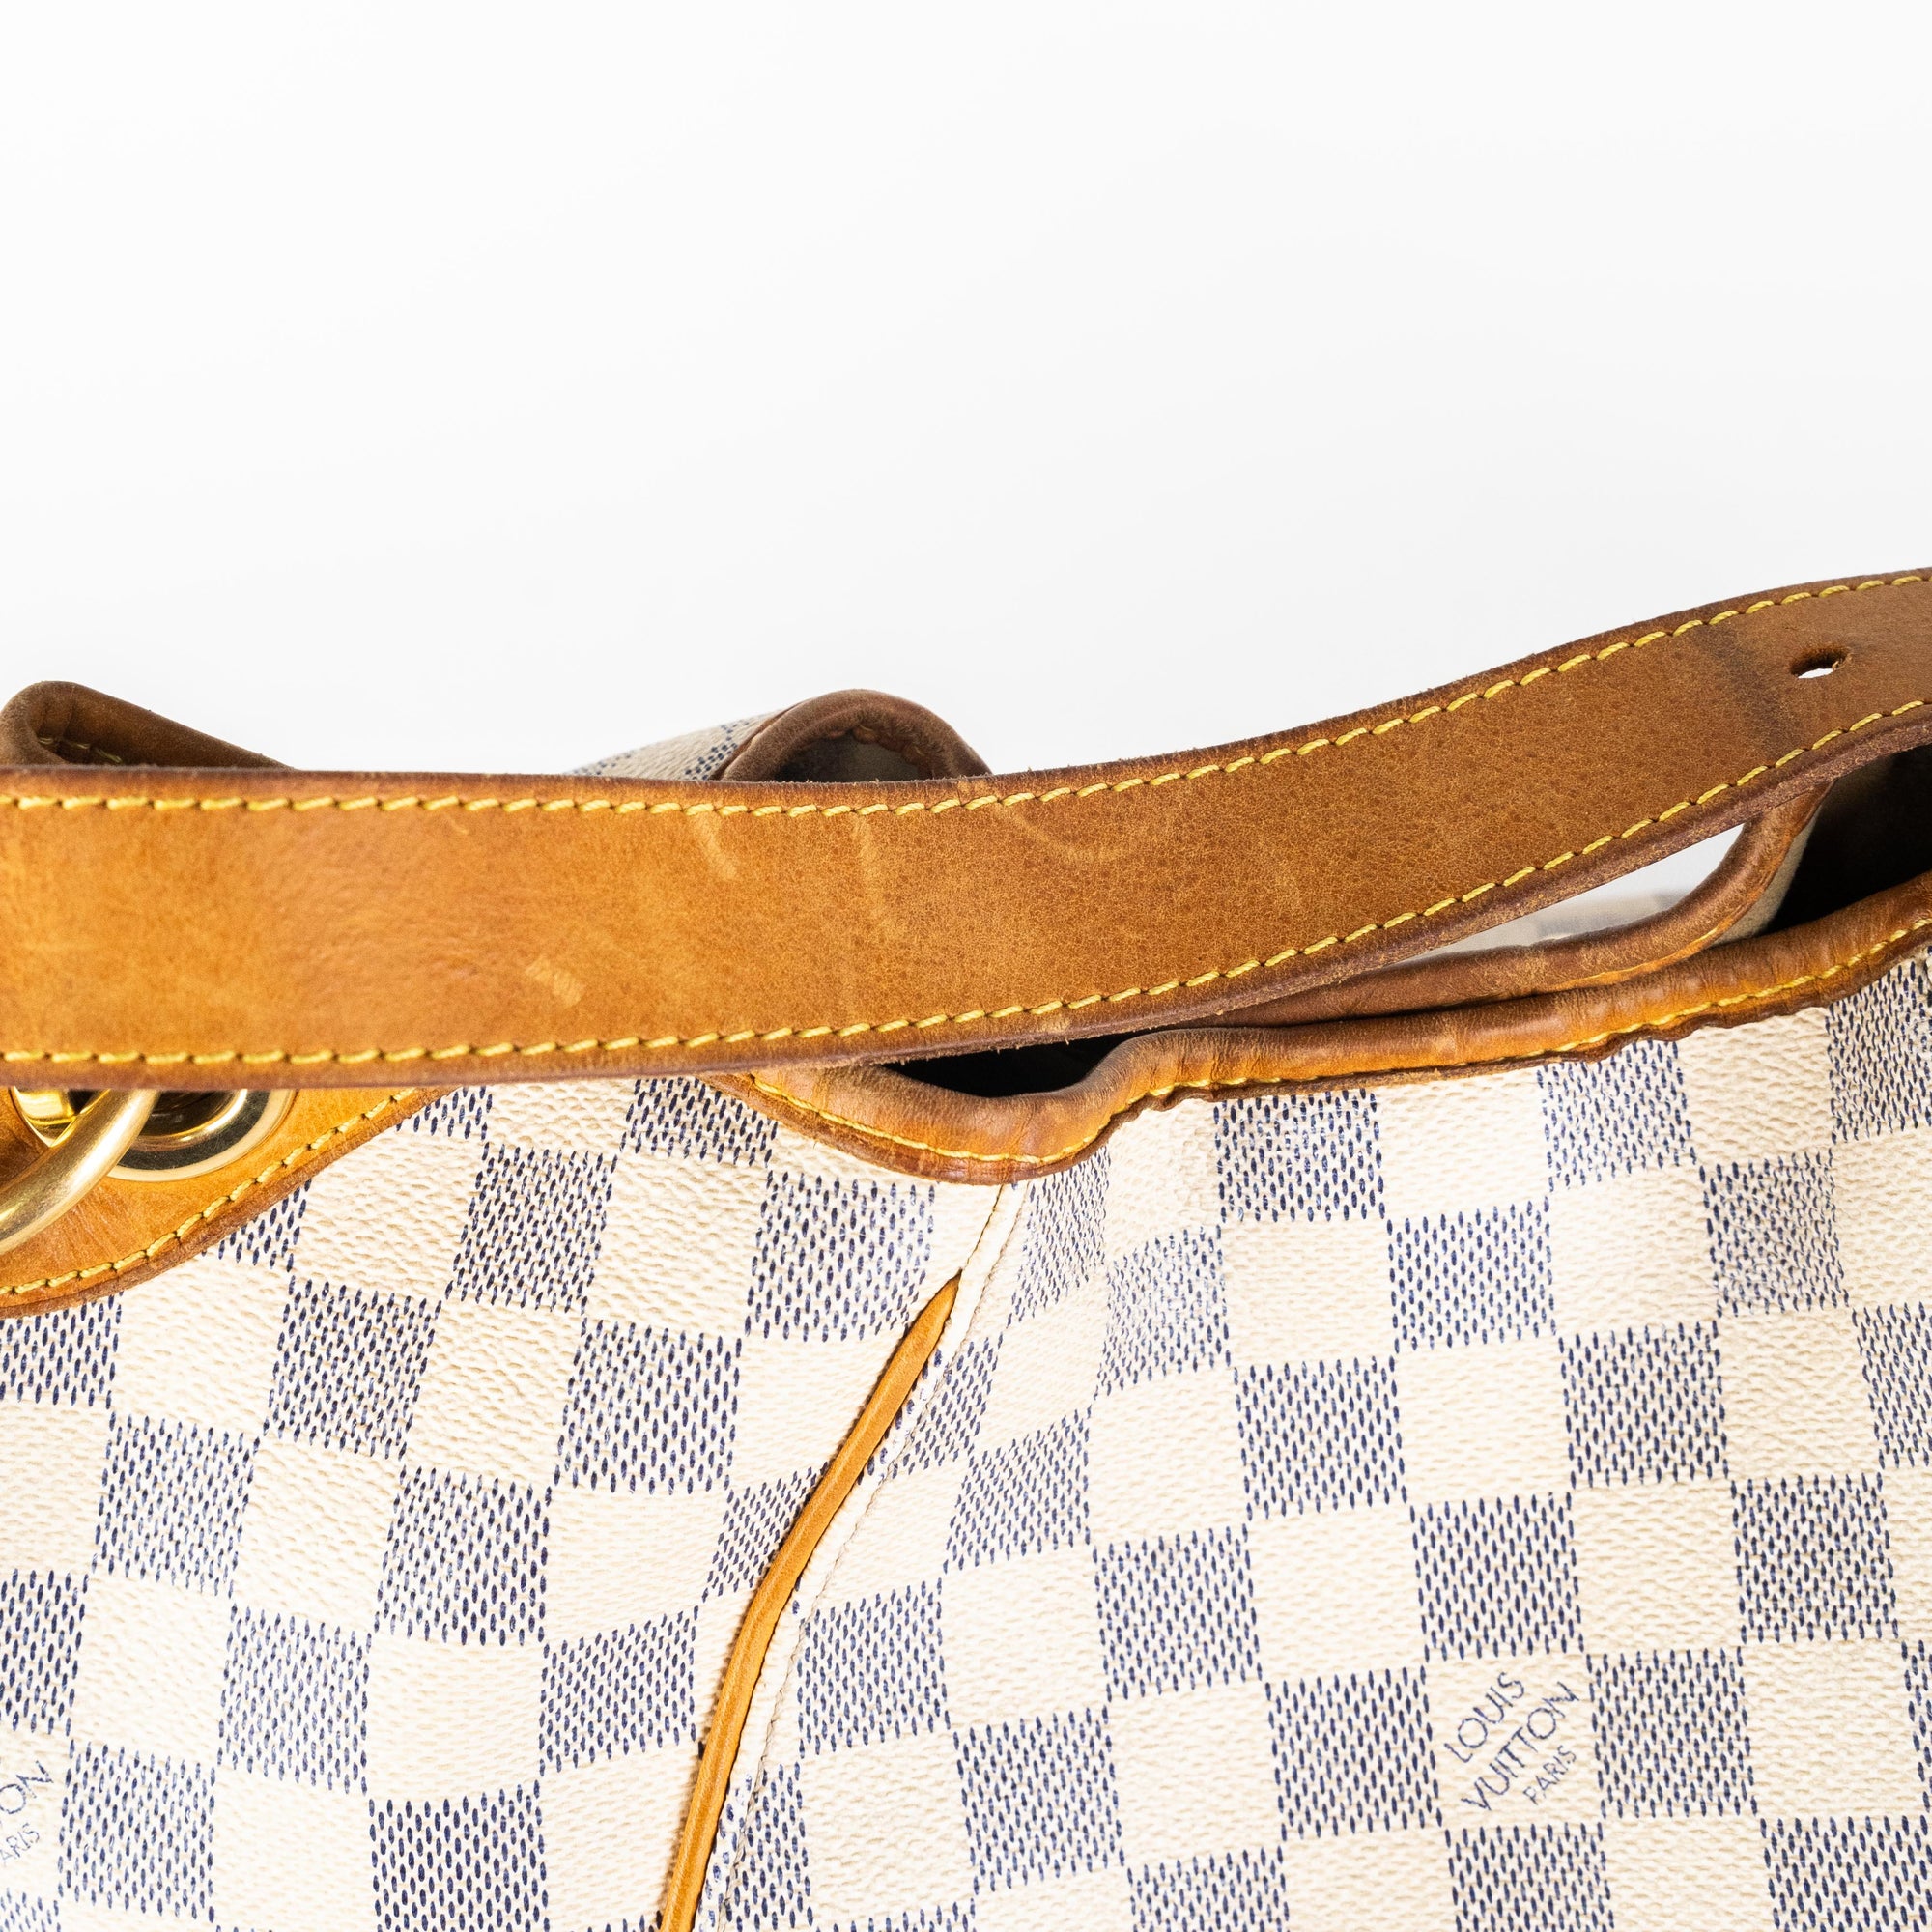 Authentic LOUIS VUITTON Galliera PM Damier Azur Tote Shoulder Bag Purse  #52307